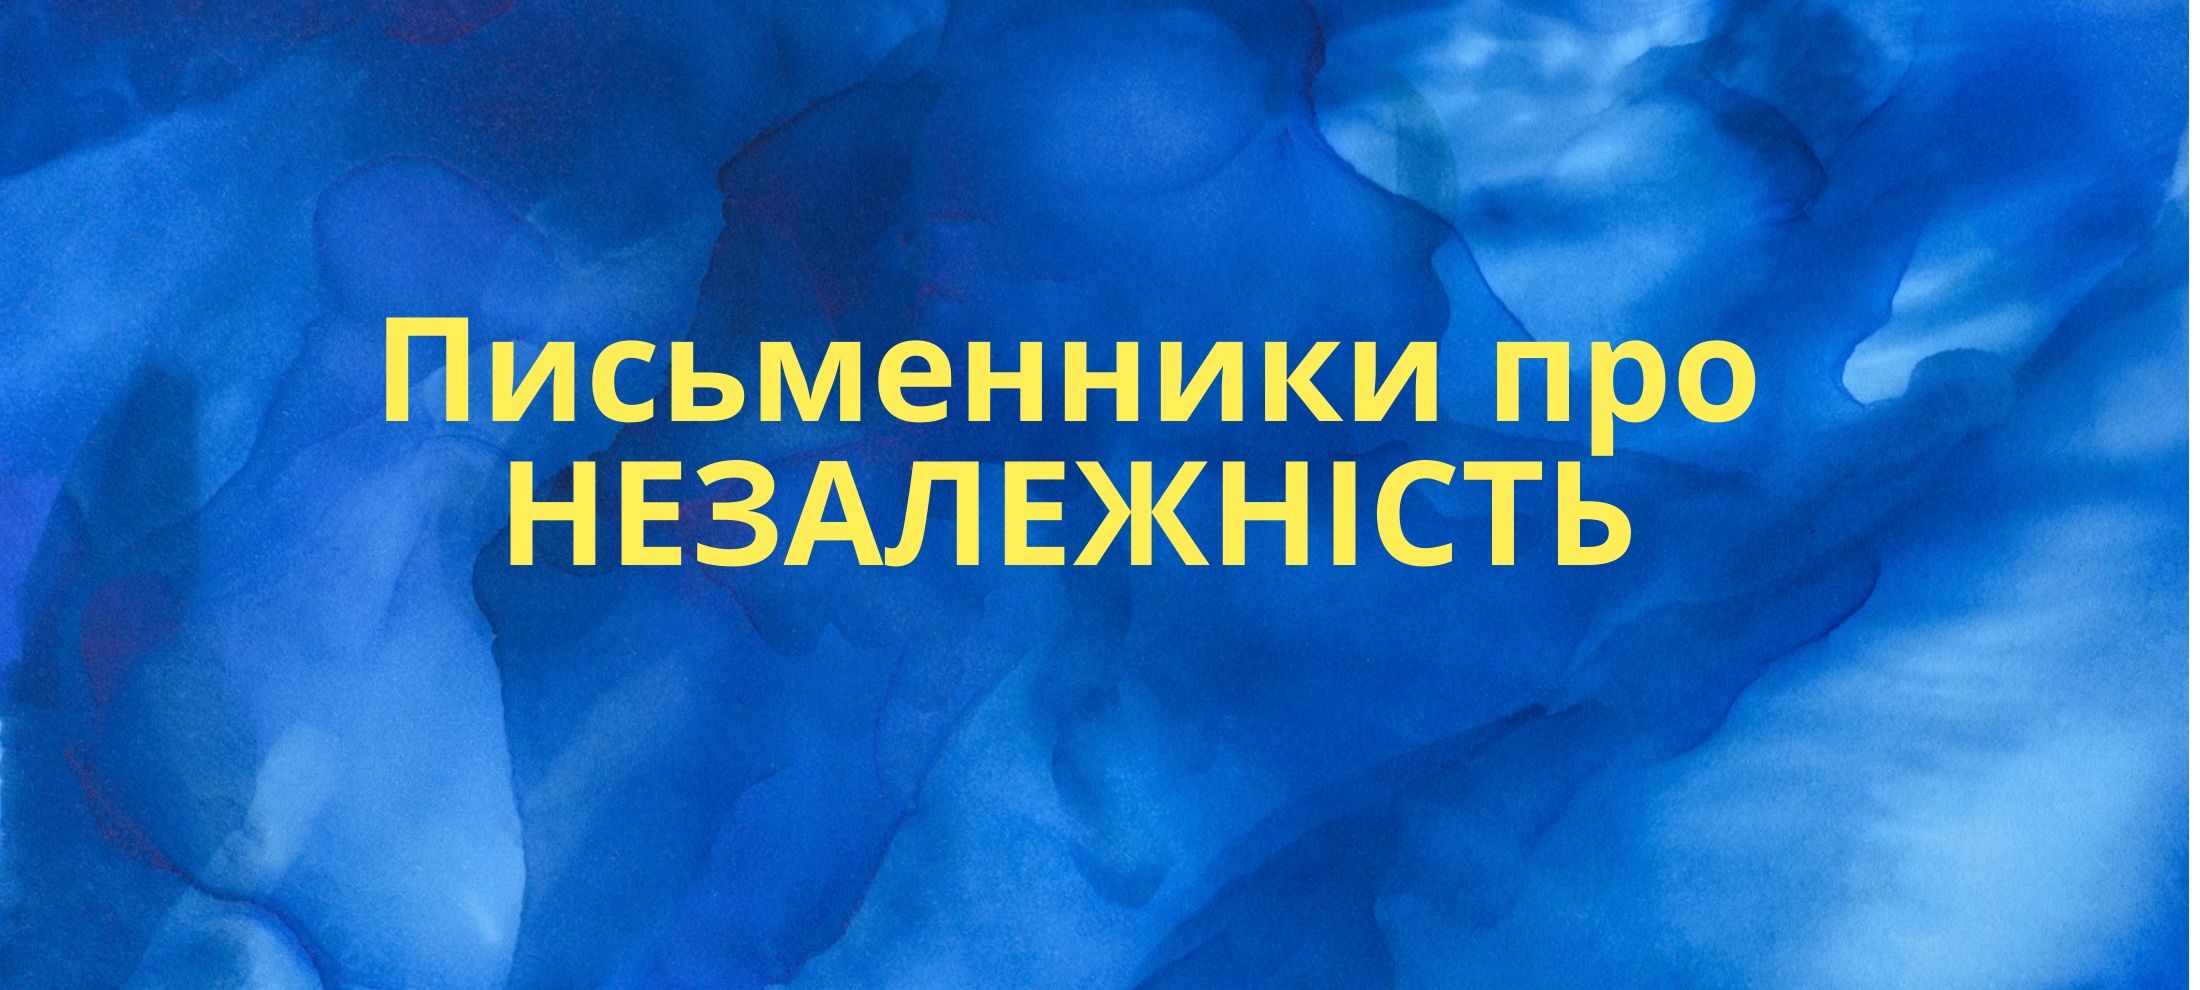 День незалежності: 24 серпня 1991 року у мріях та спогадах українських письменників 0